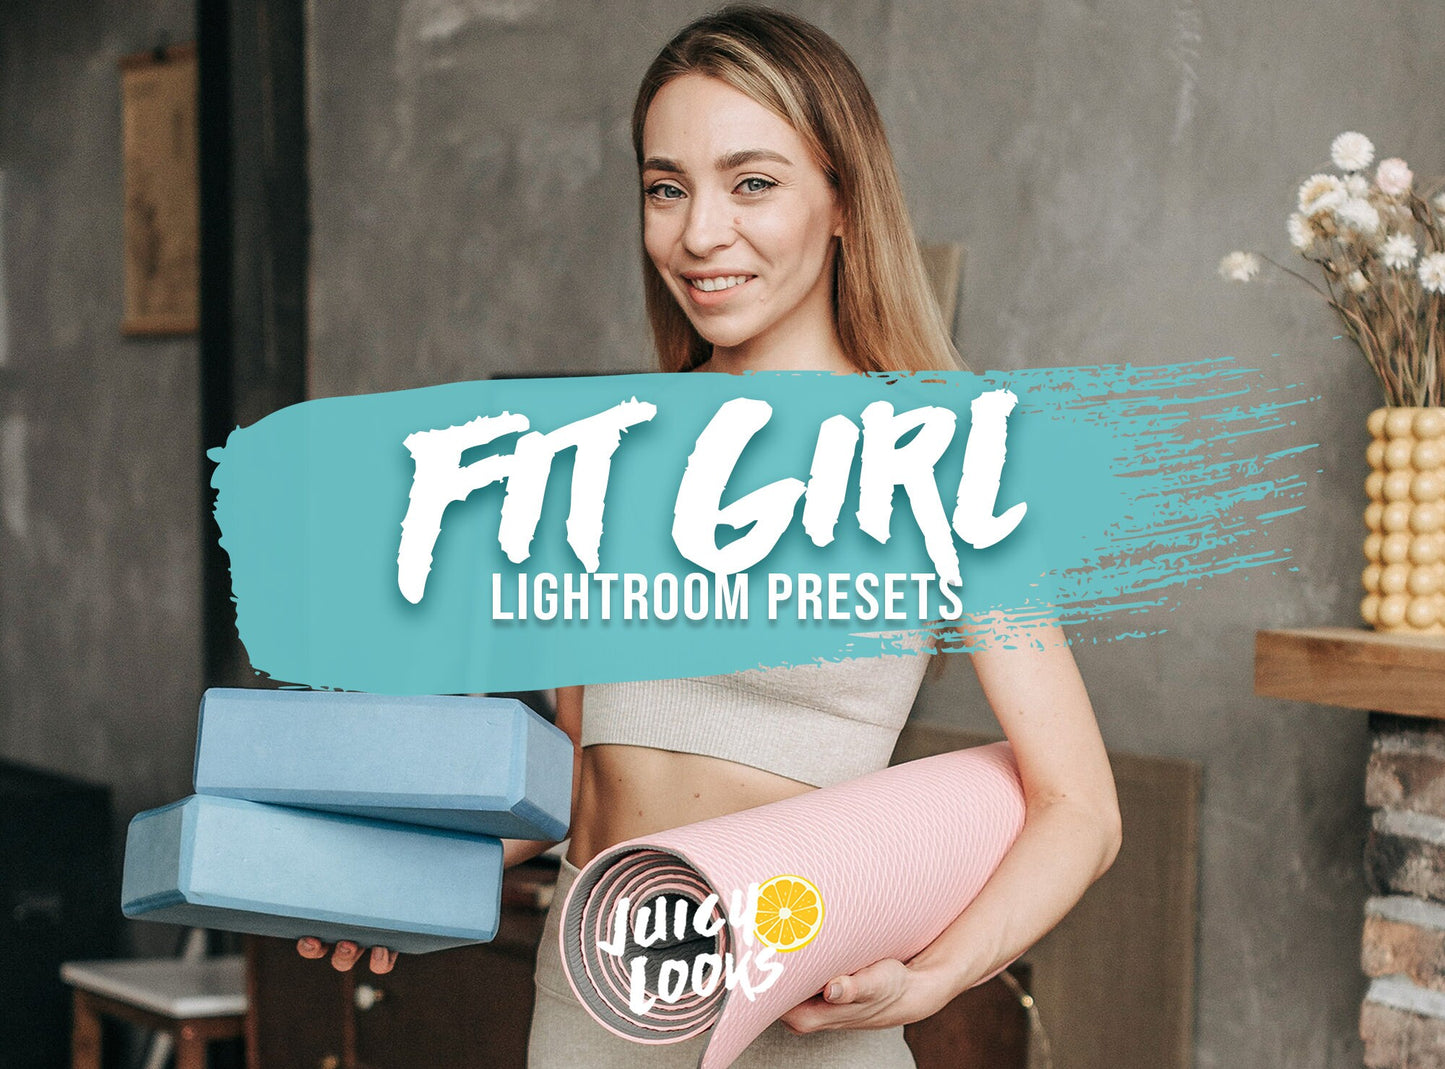 Fit Girl Lightroom Presets for Mobile & Desktop - Juicy Looks Presets